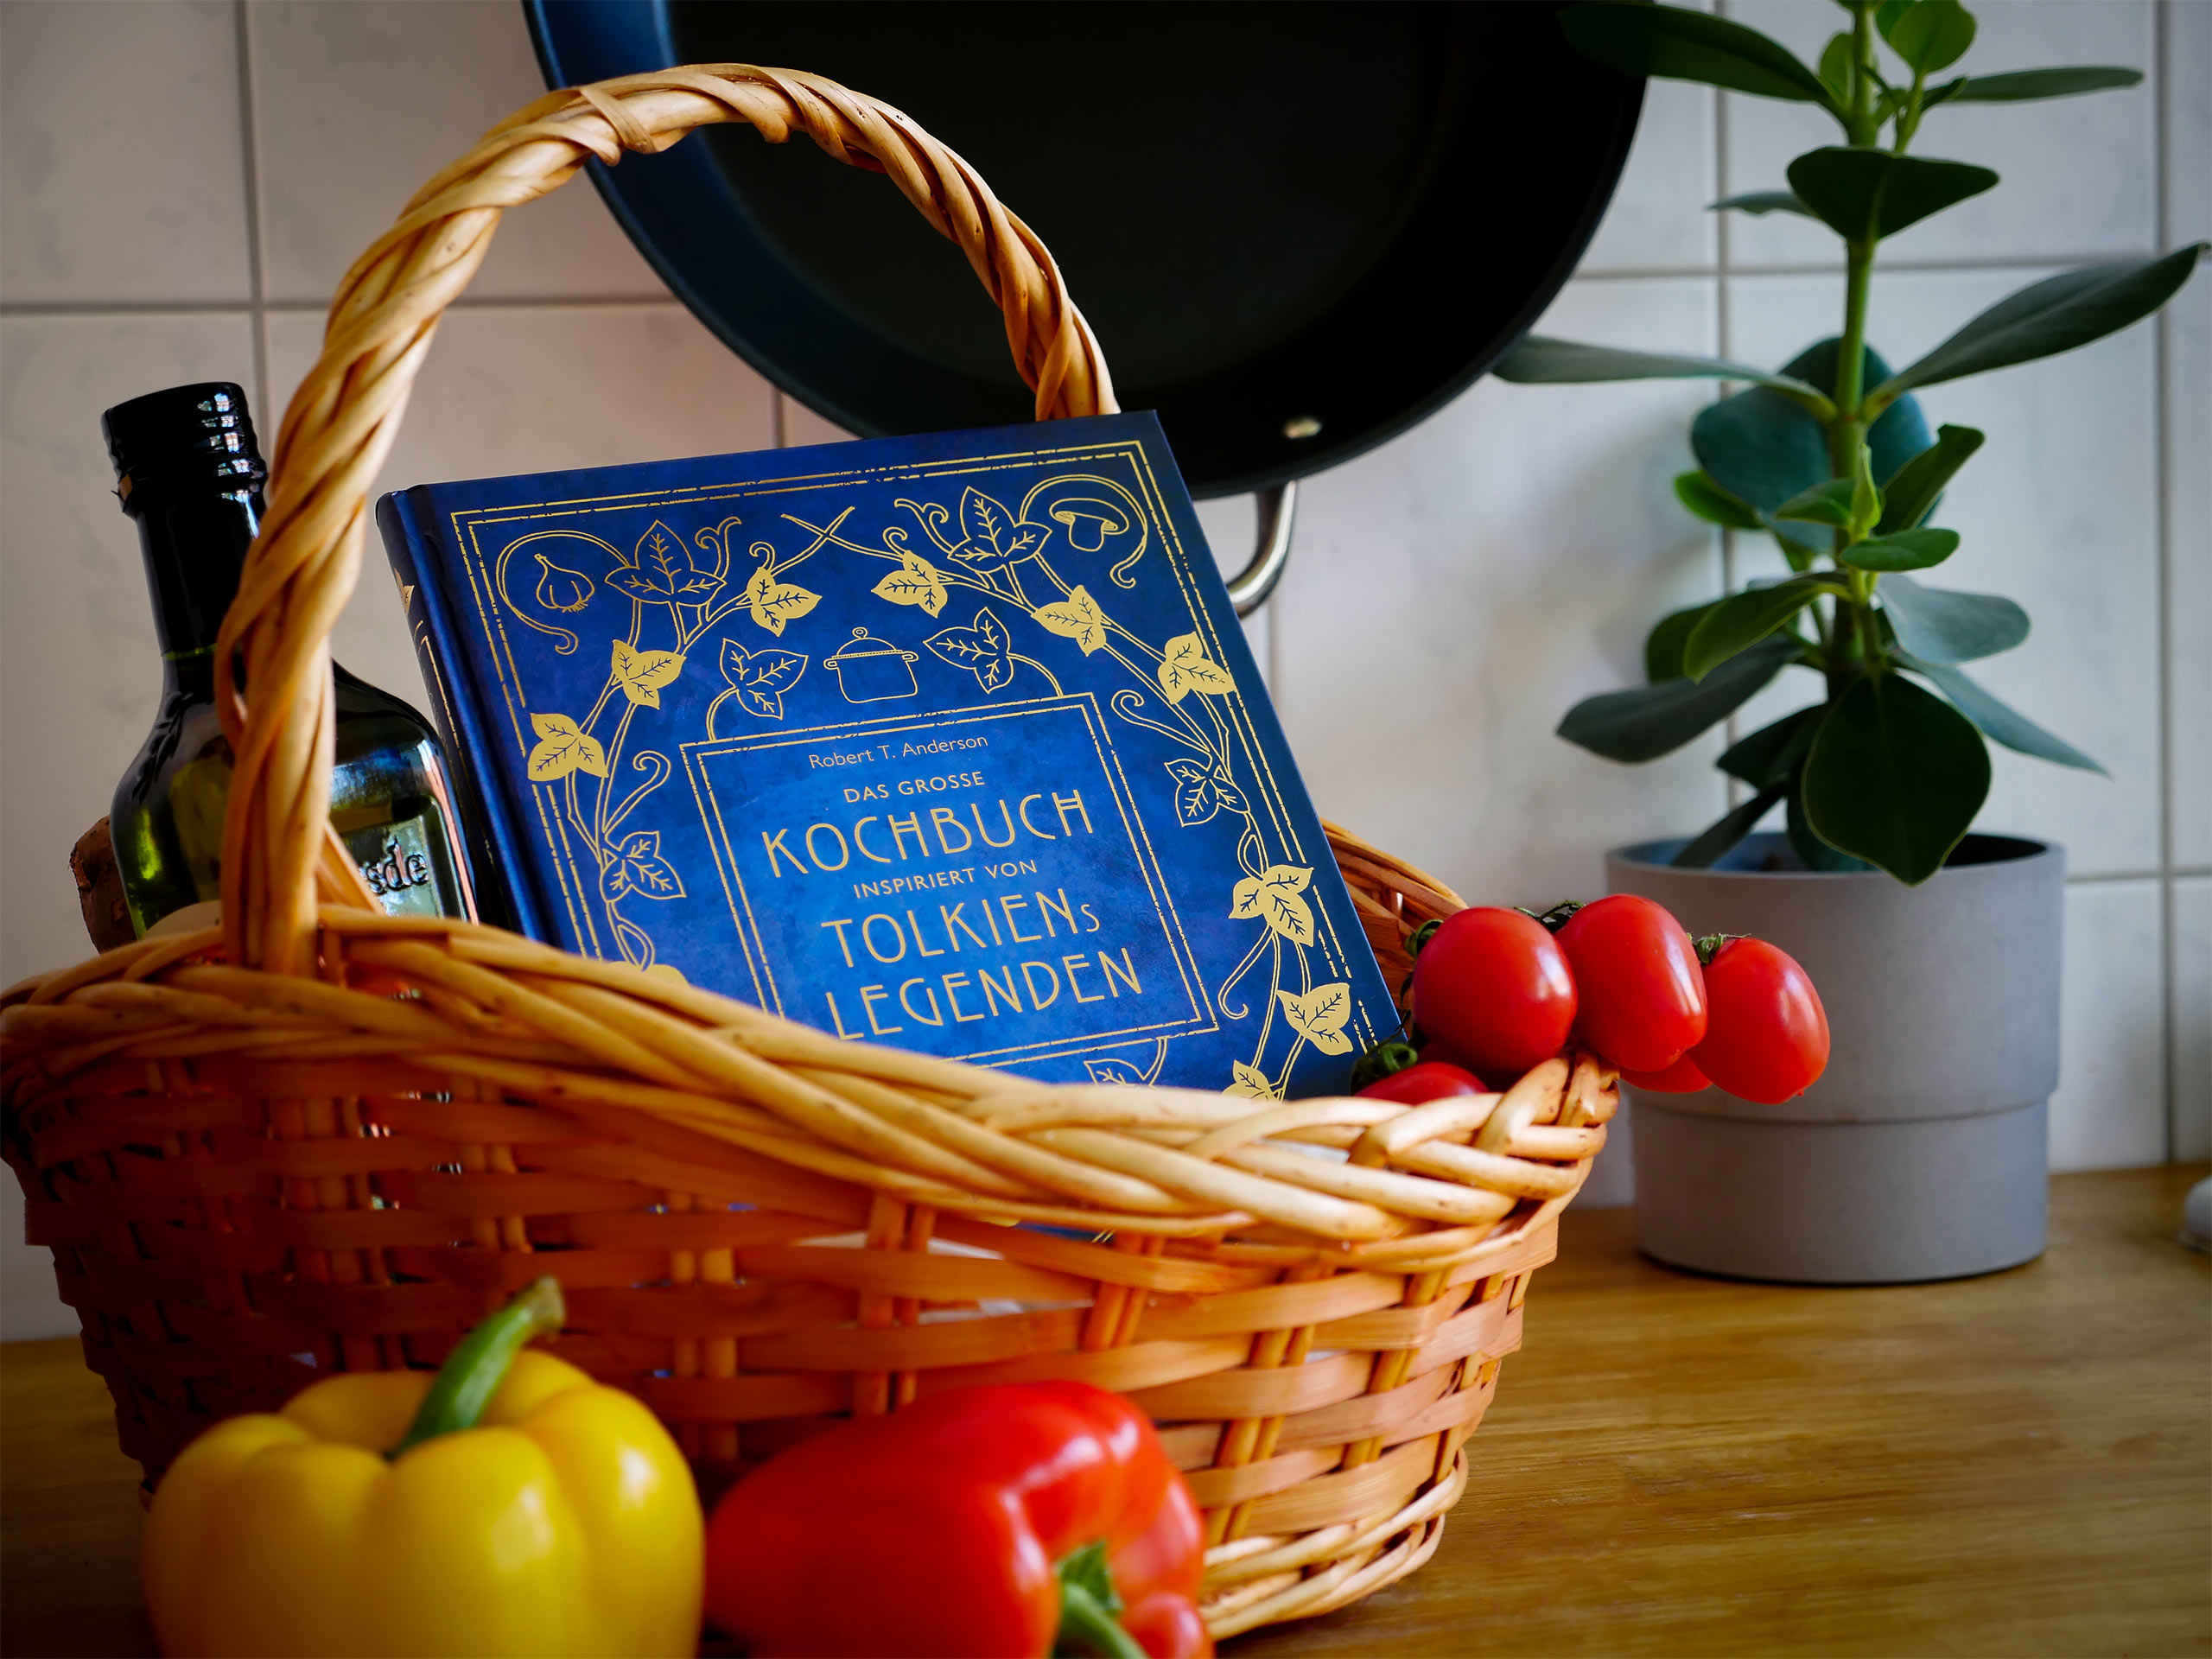 Das große Kochbuch inspiriert von Tolkiens Legenden